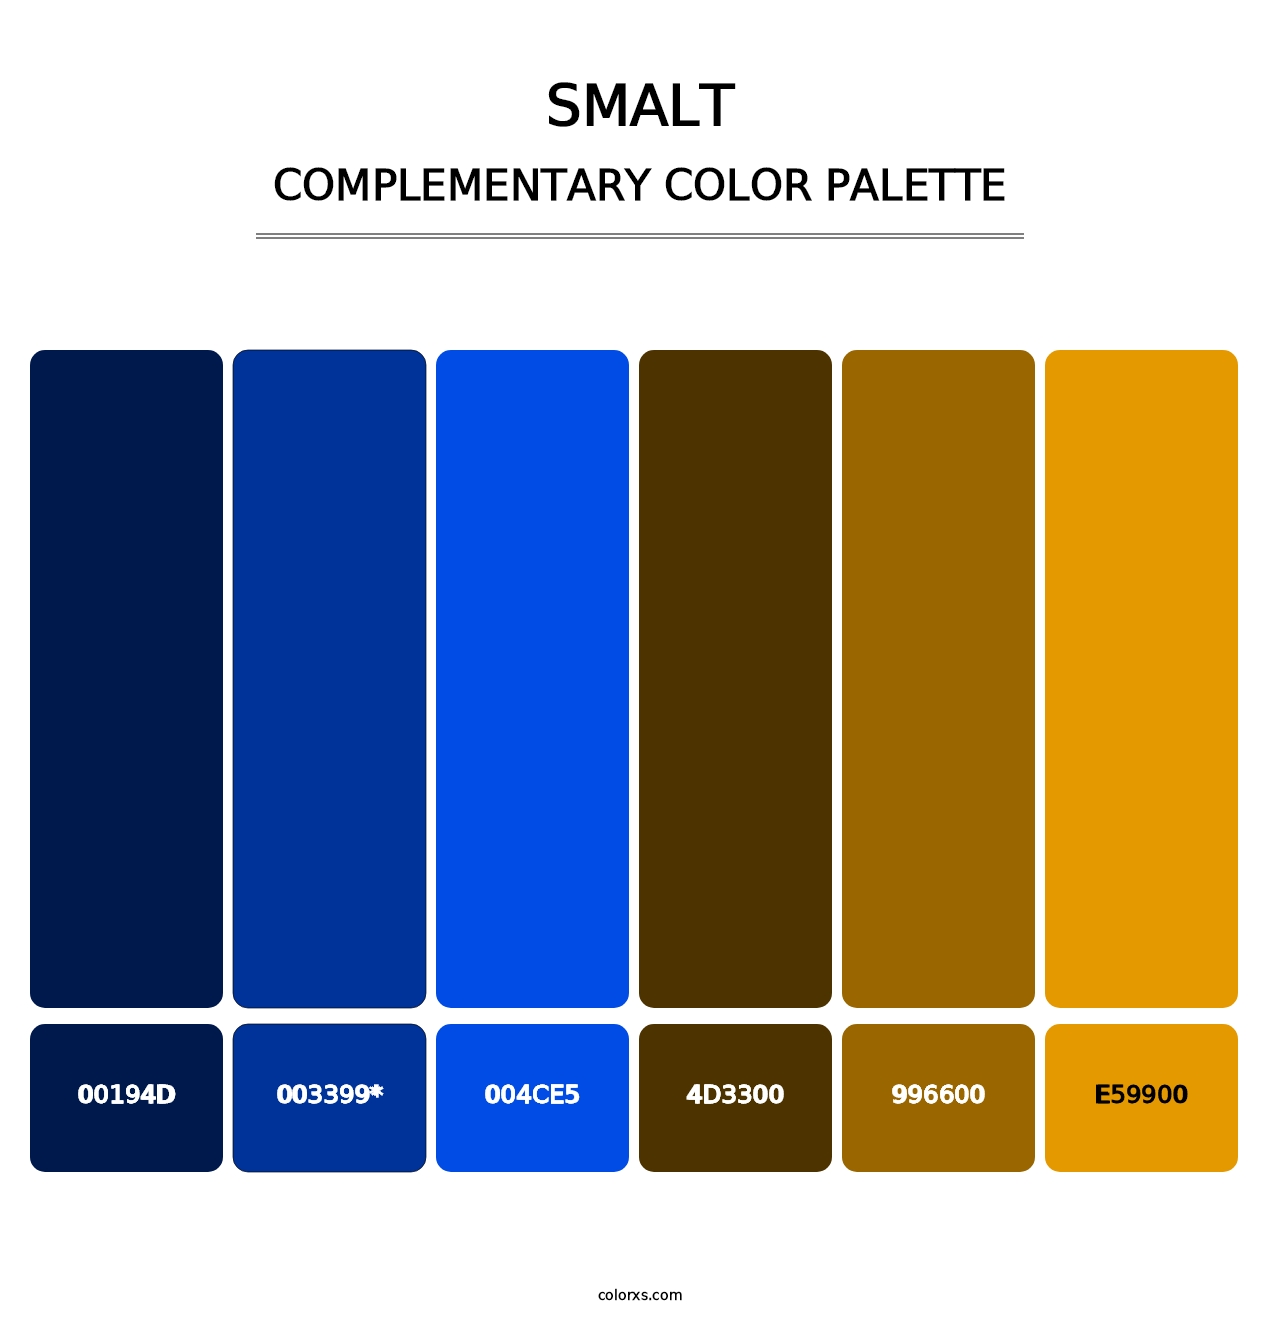 Smalt - Complementary Color Palette